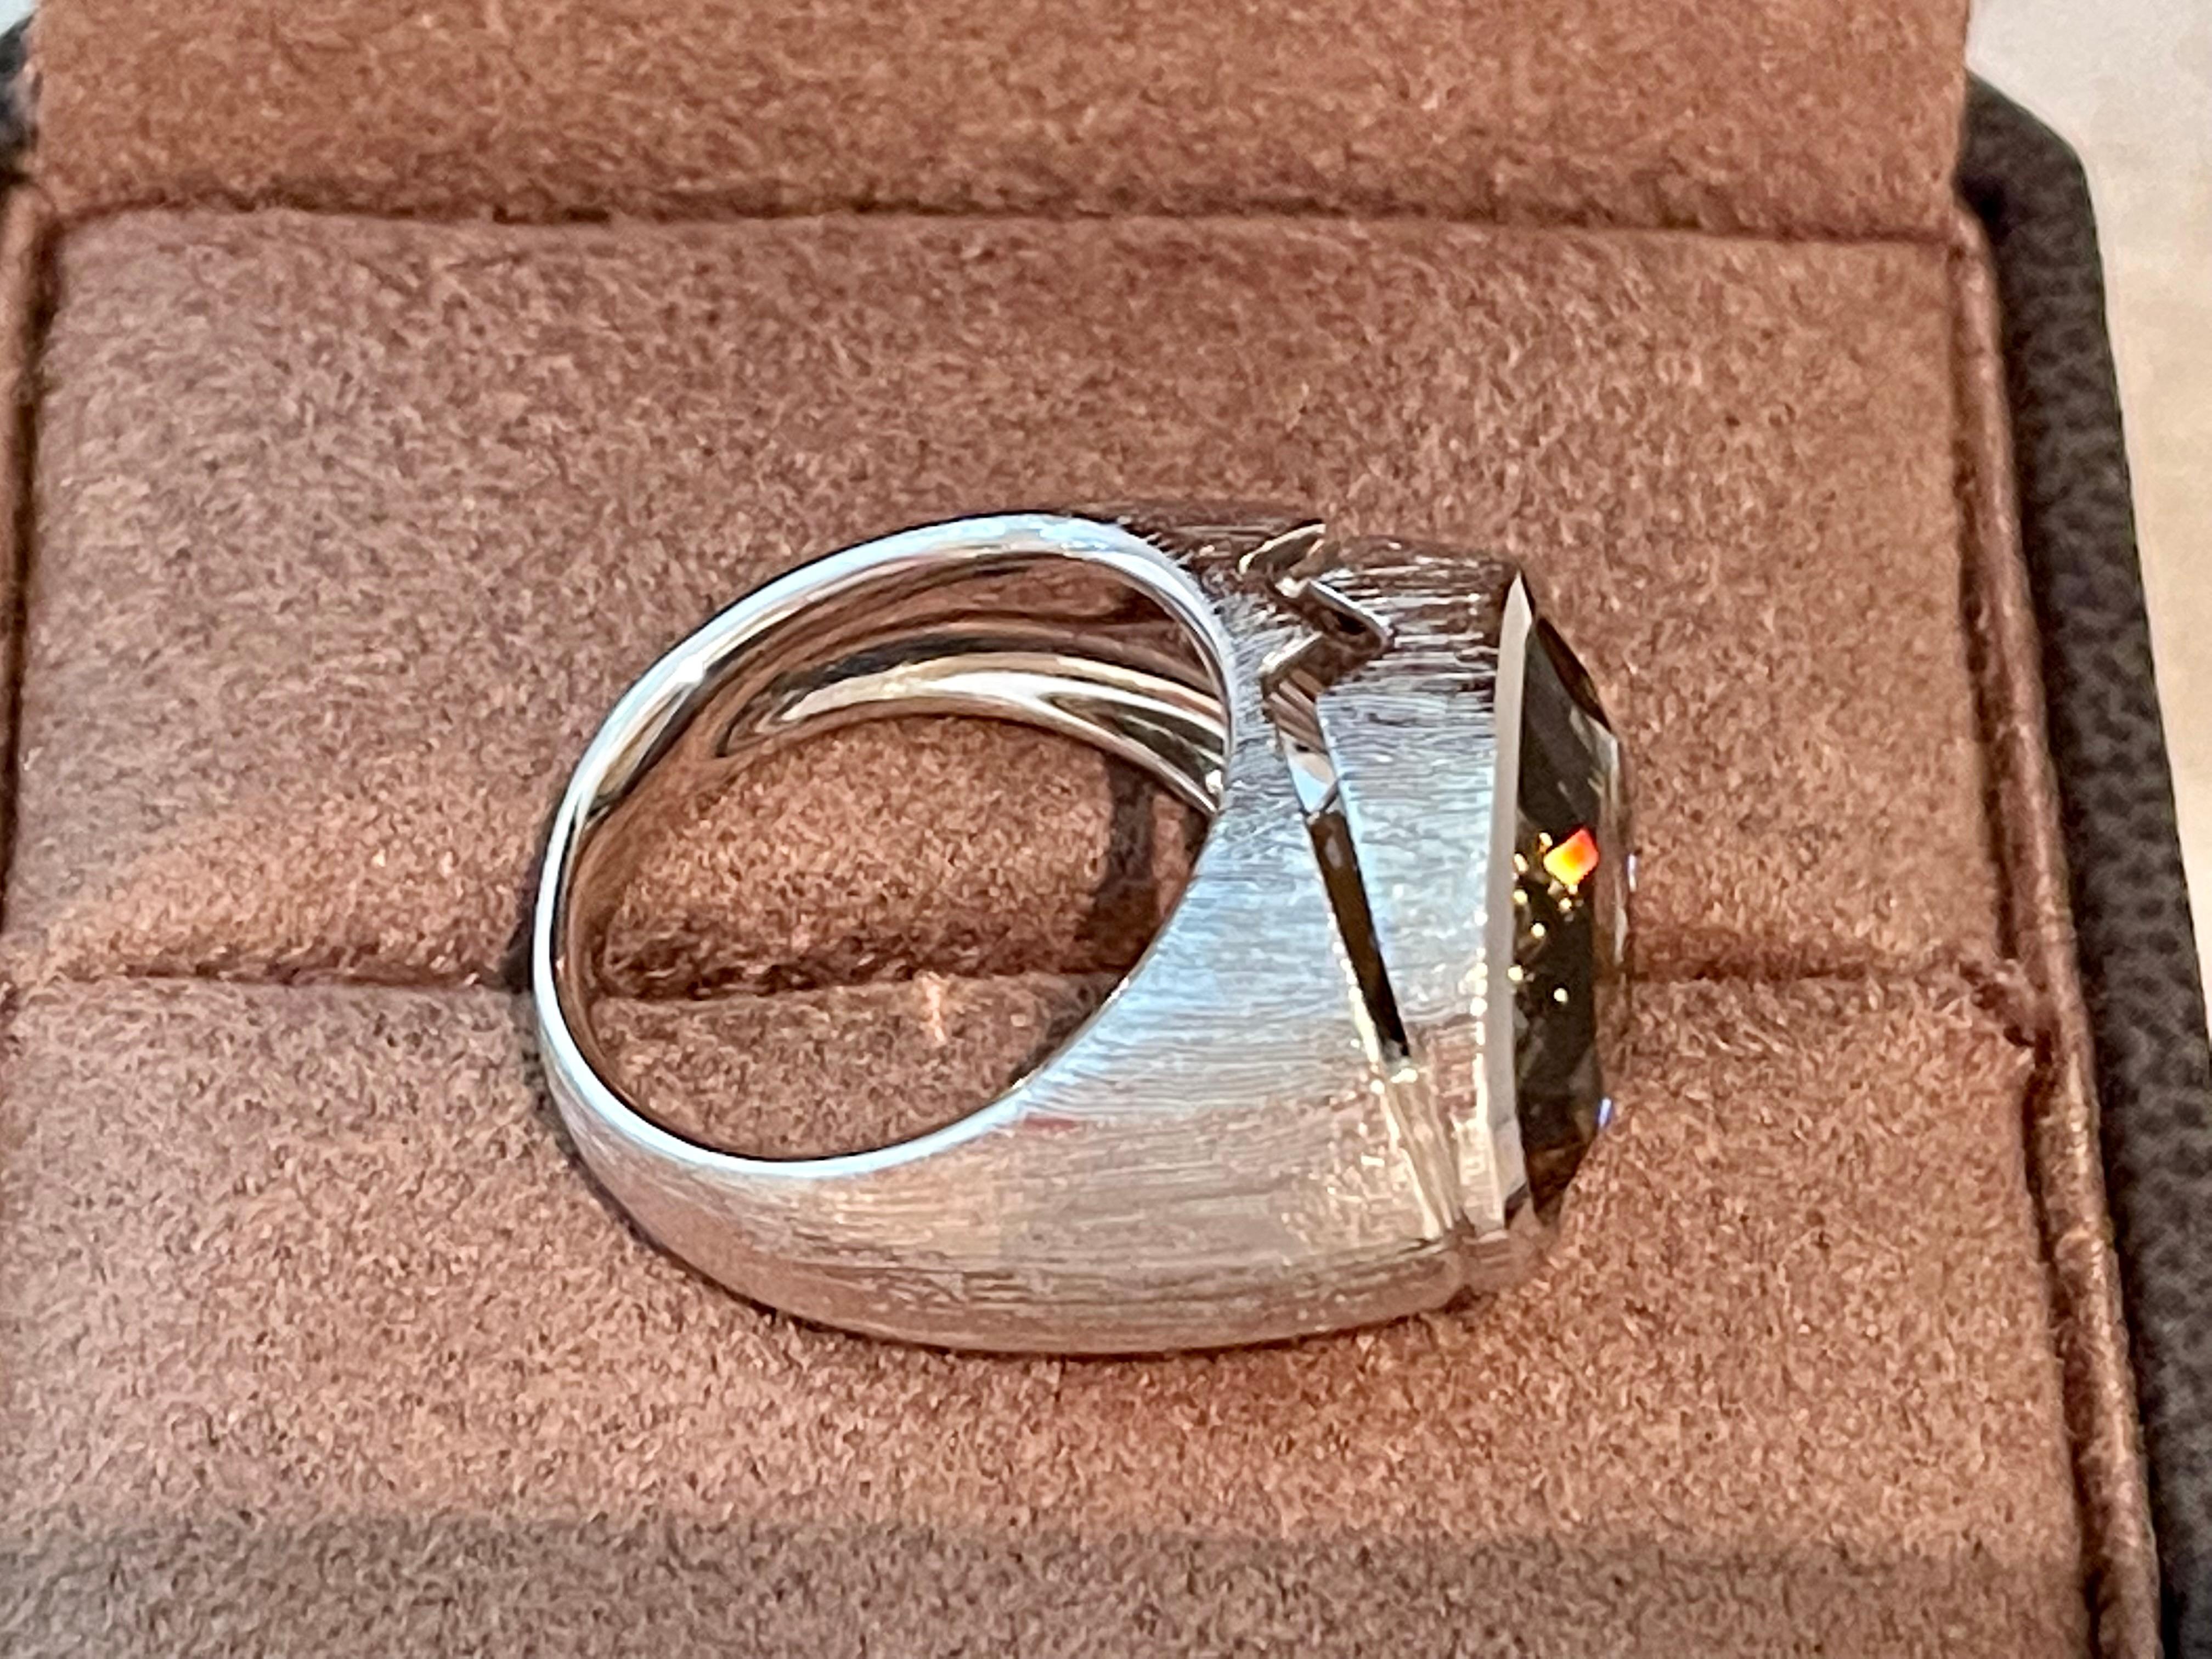 Dieser moderne Ring aus 18-karätigem Weißgold hat einen ovalen Rauchquarz mit einem Gewicht von 8,48 ct. in der Lünette. Das Gold hat eine gebürstete Textur. 
Der Ring hat derzeit die Größe 14/54 (amerikanische Ringgröße 7), kann aber leicht in der